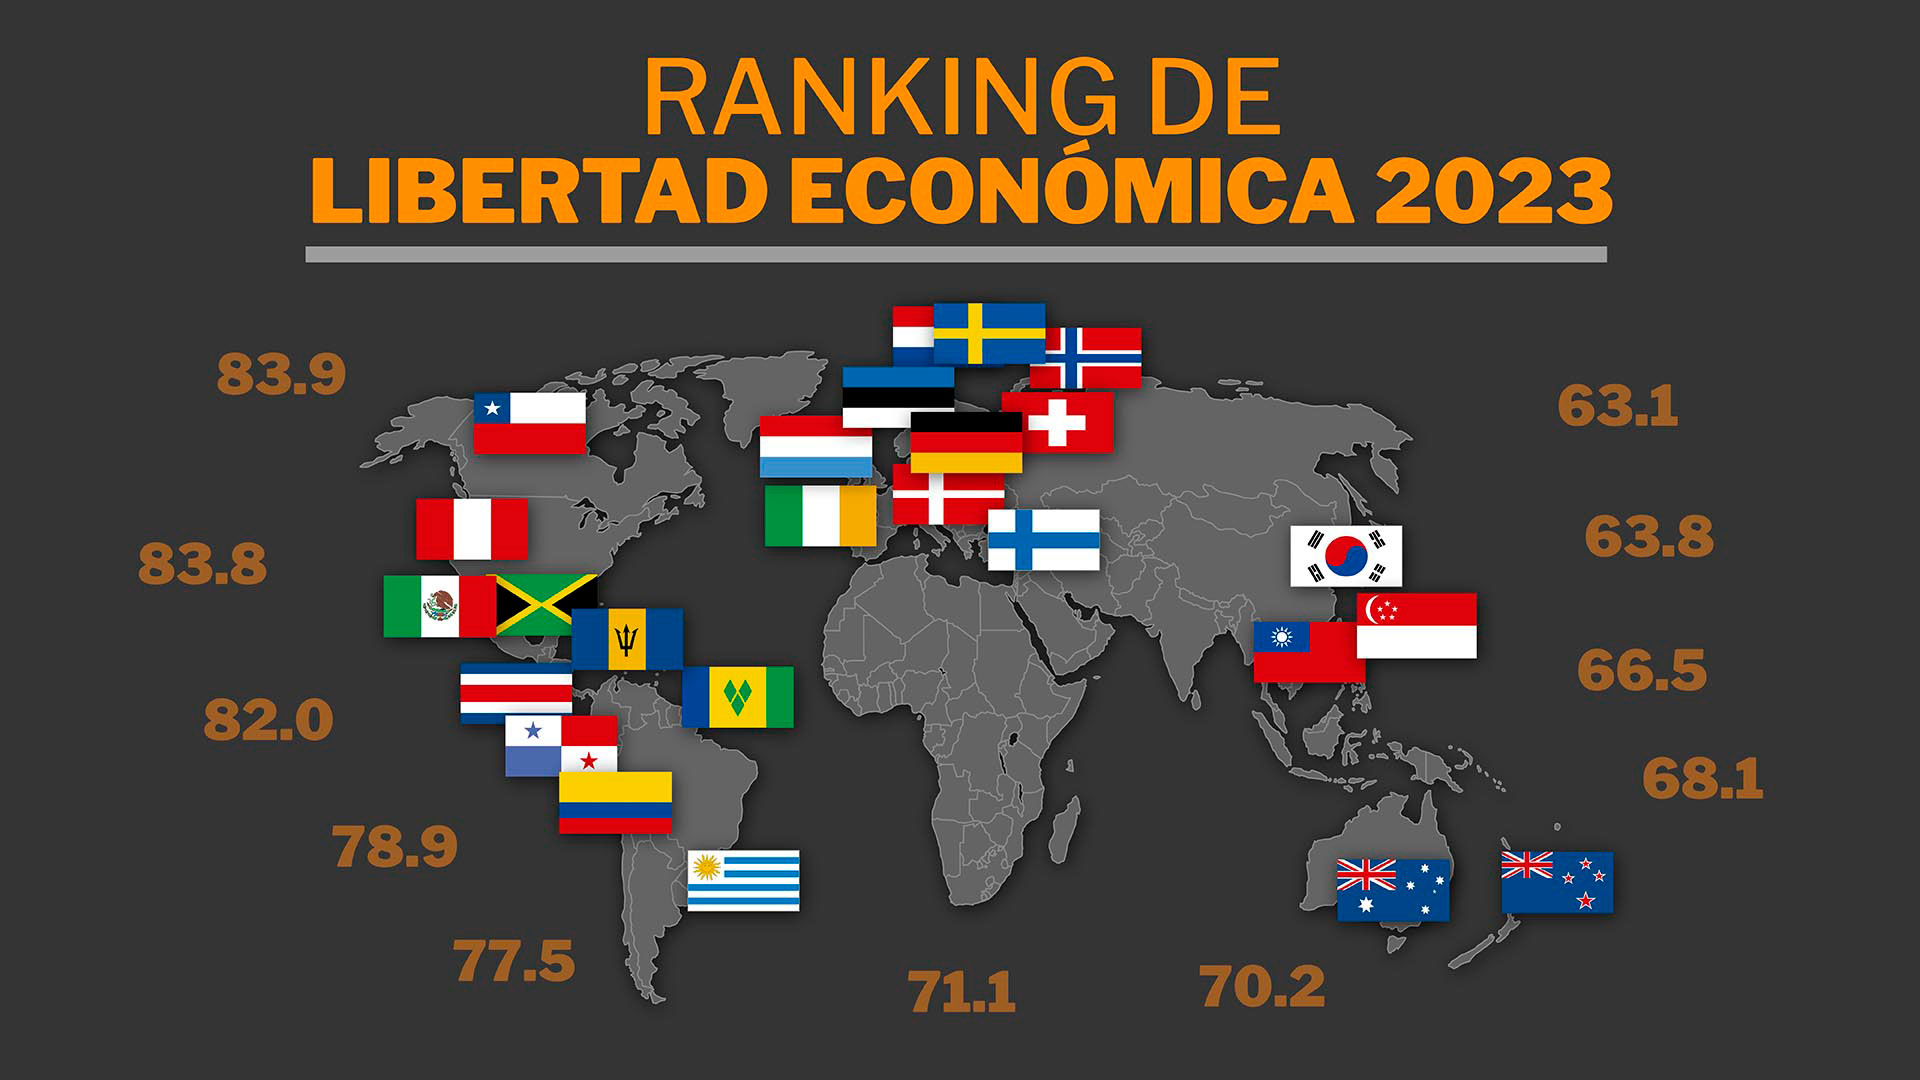 Ranking de libertad económica 2023: los 15 países que lideran la lista y dónde se ubican los países de Latinoamérica